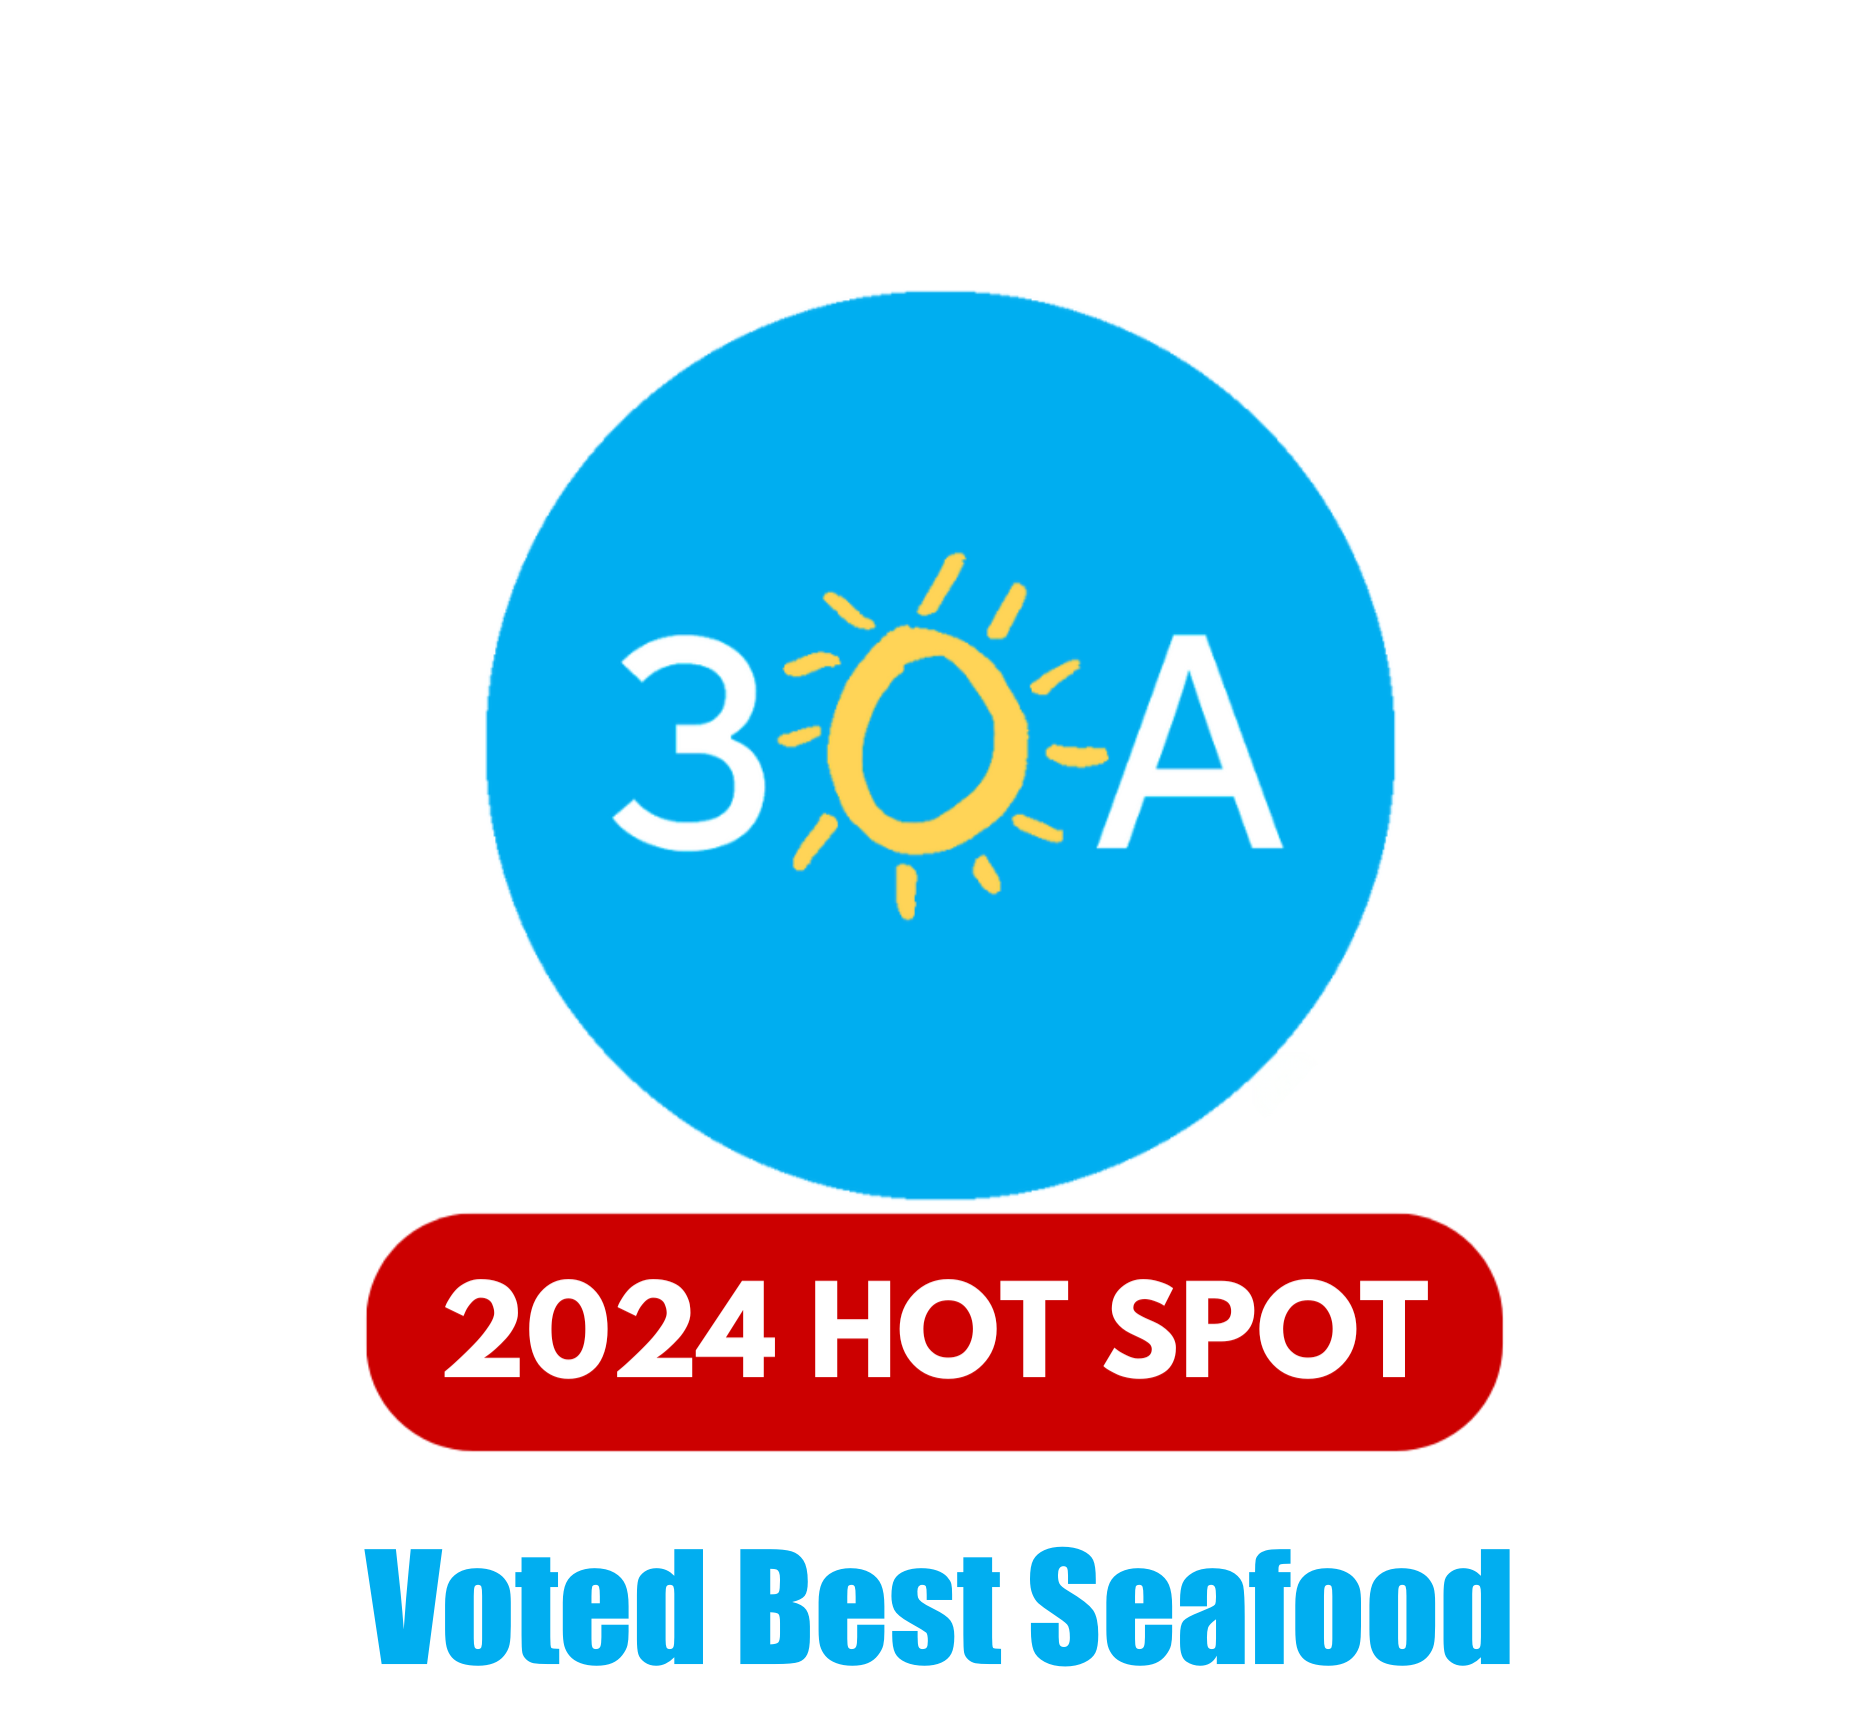 30A Hot Spot Best Seafood